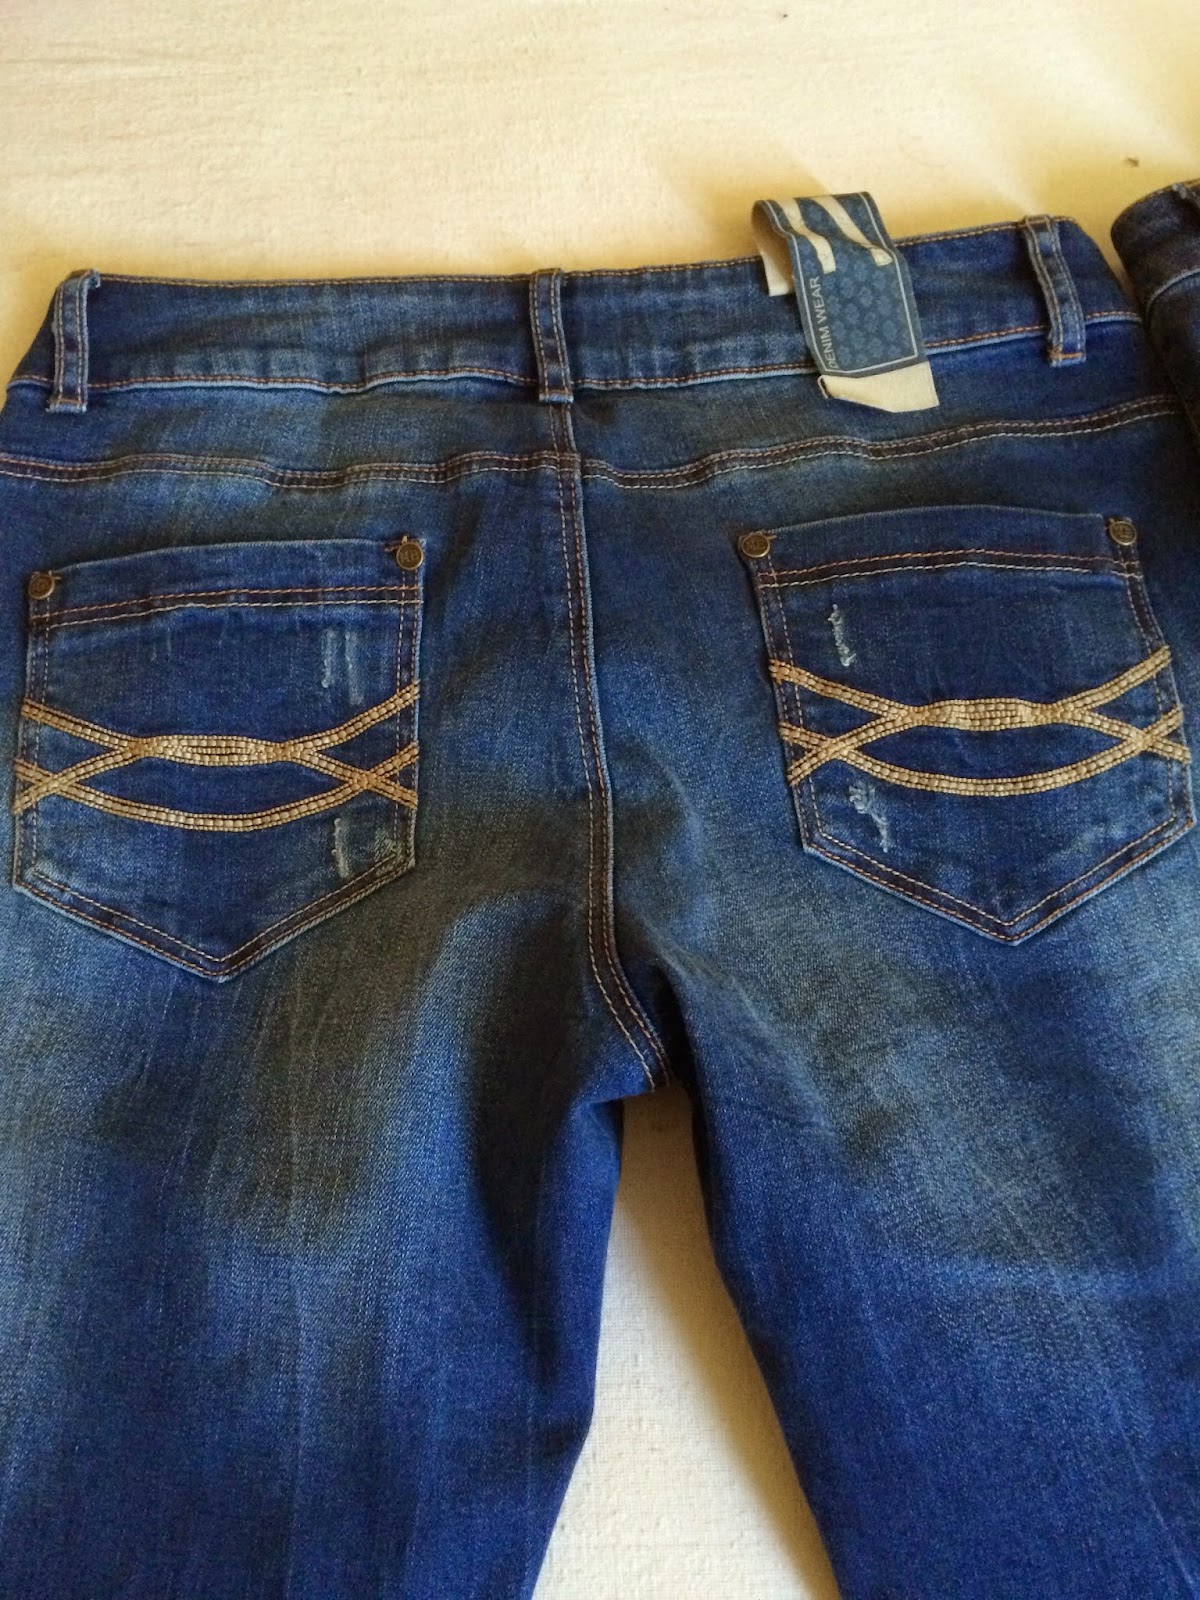 *Werbung* Shoptest Jeans Fritz 7